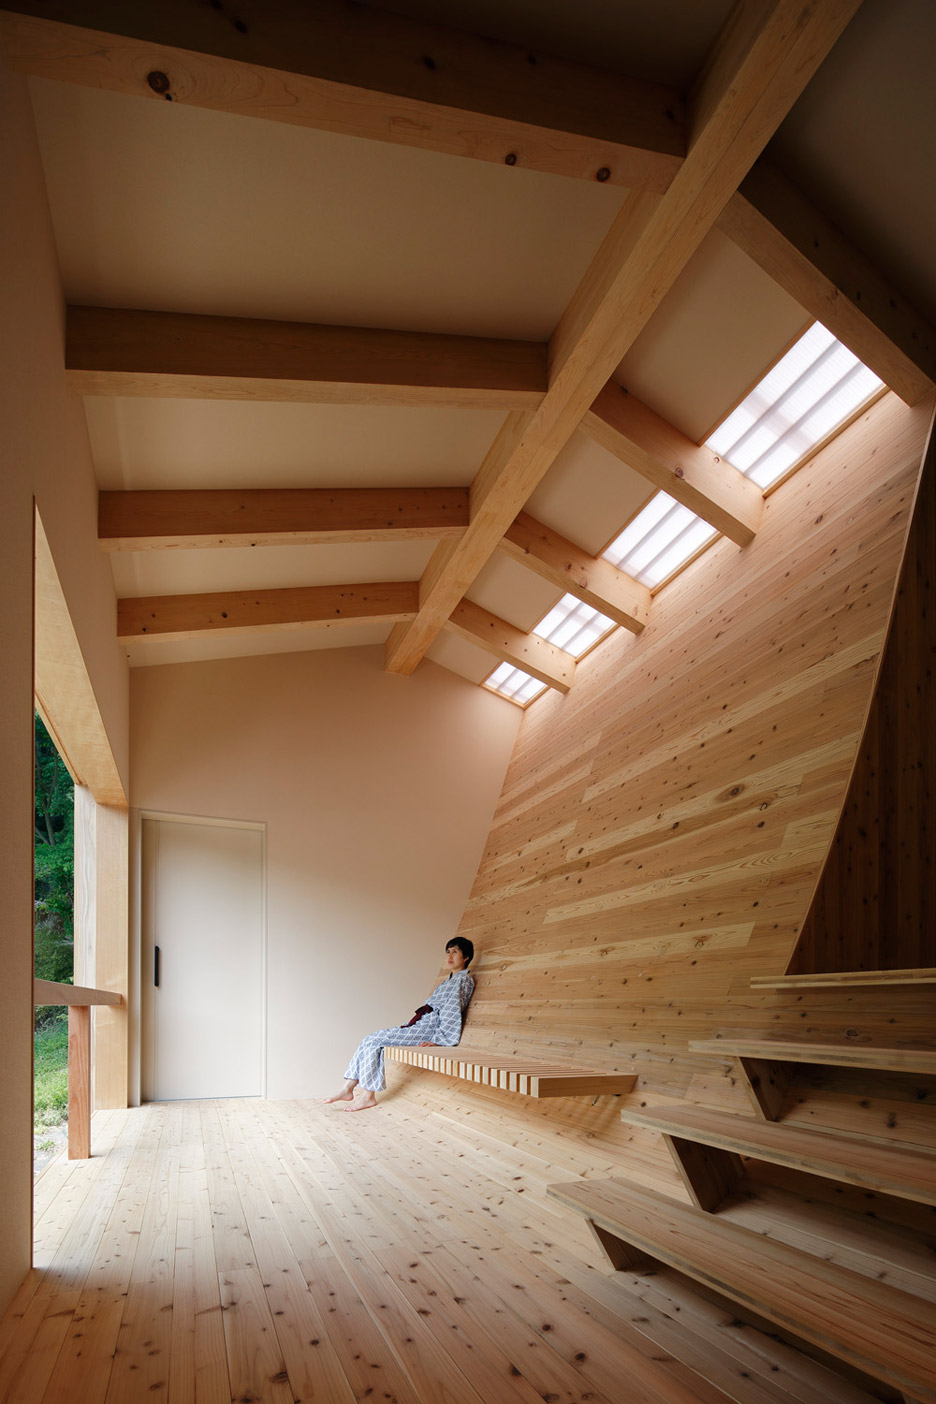 Bath House Maruhon by Kubo Tsushima Architects